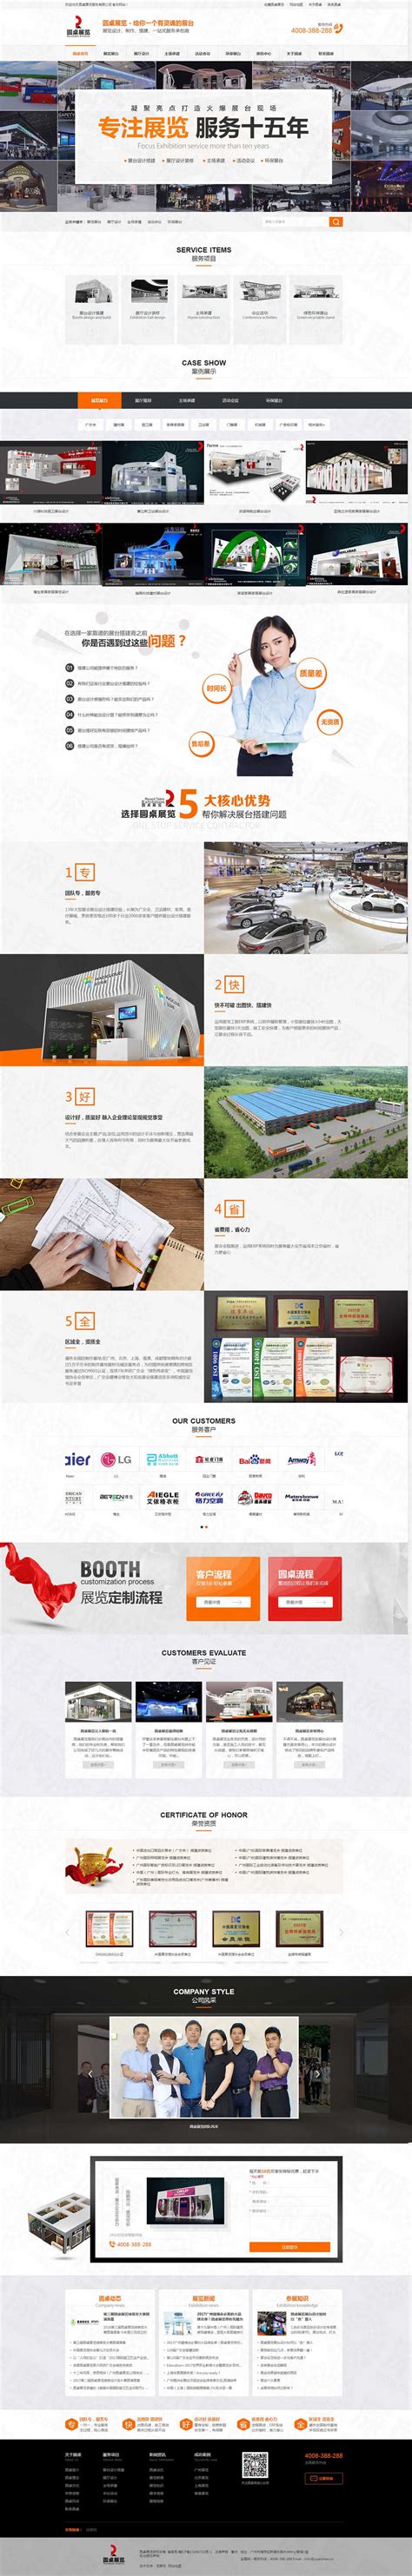 广州圆桌展览营销网站建设案例-深度网